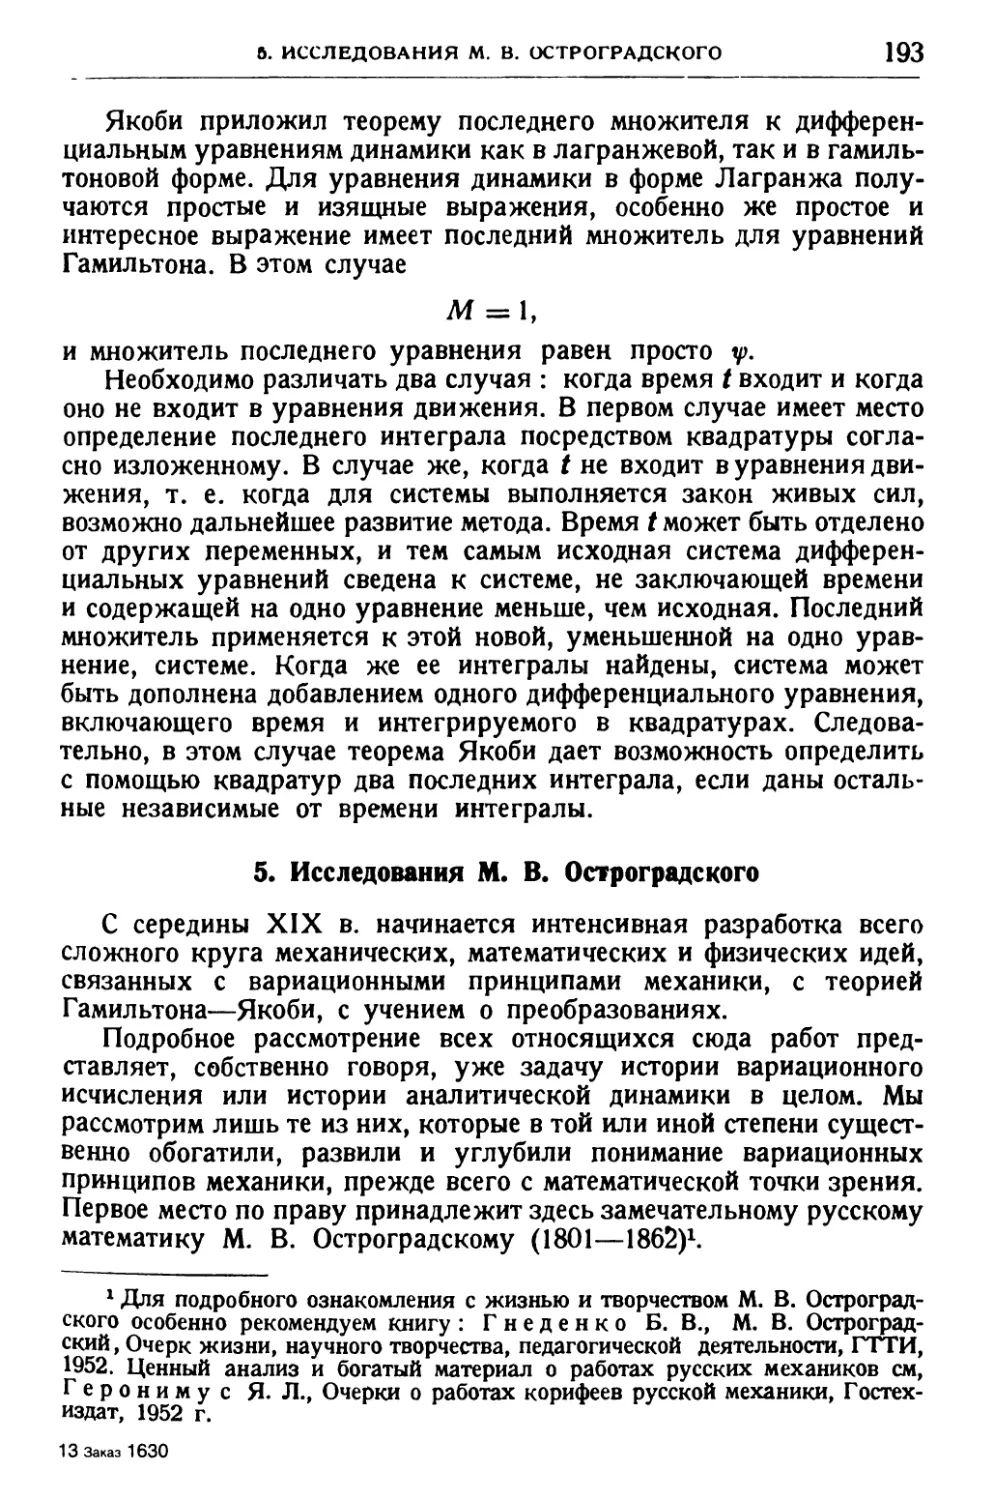 5. Исследования М. В. Остроградского